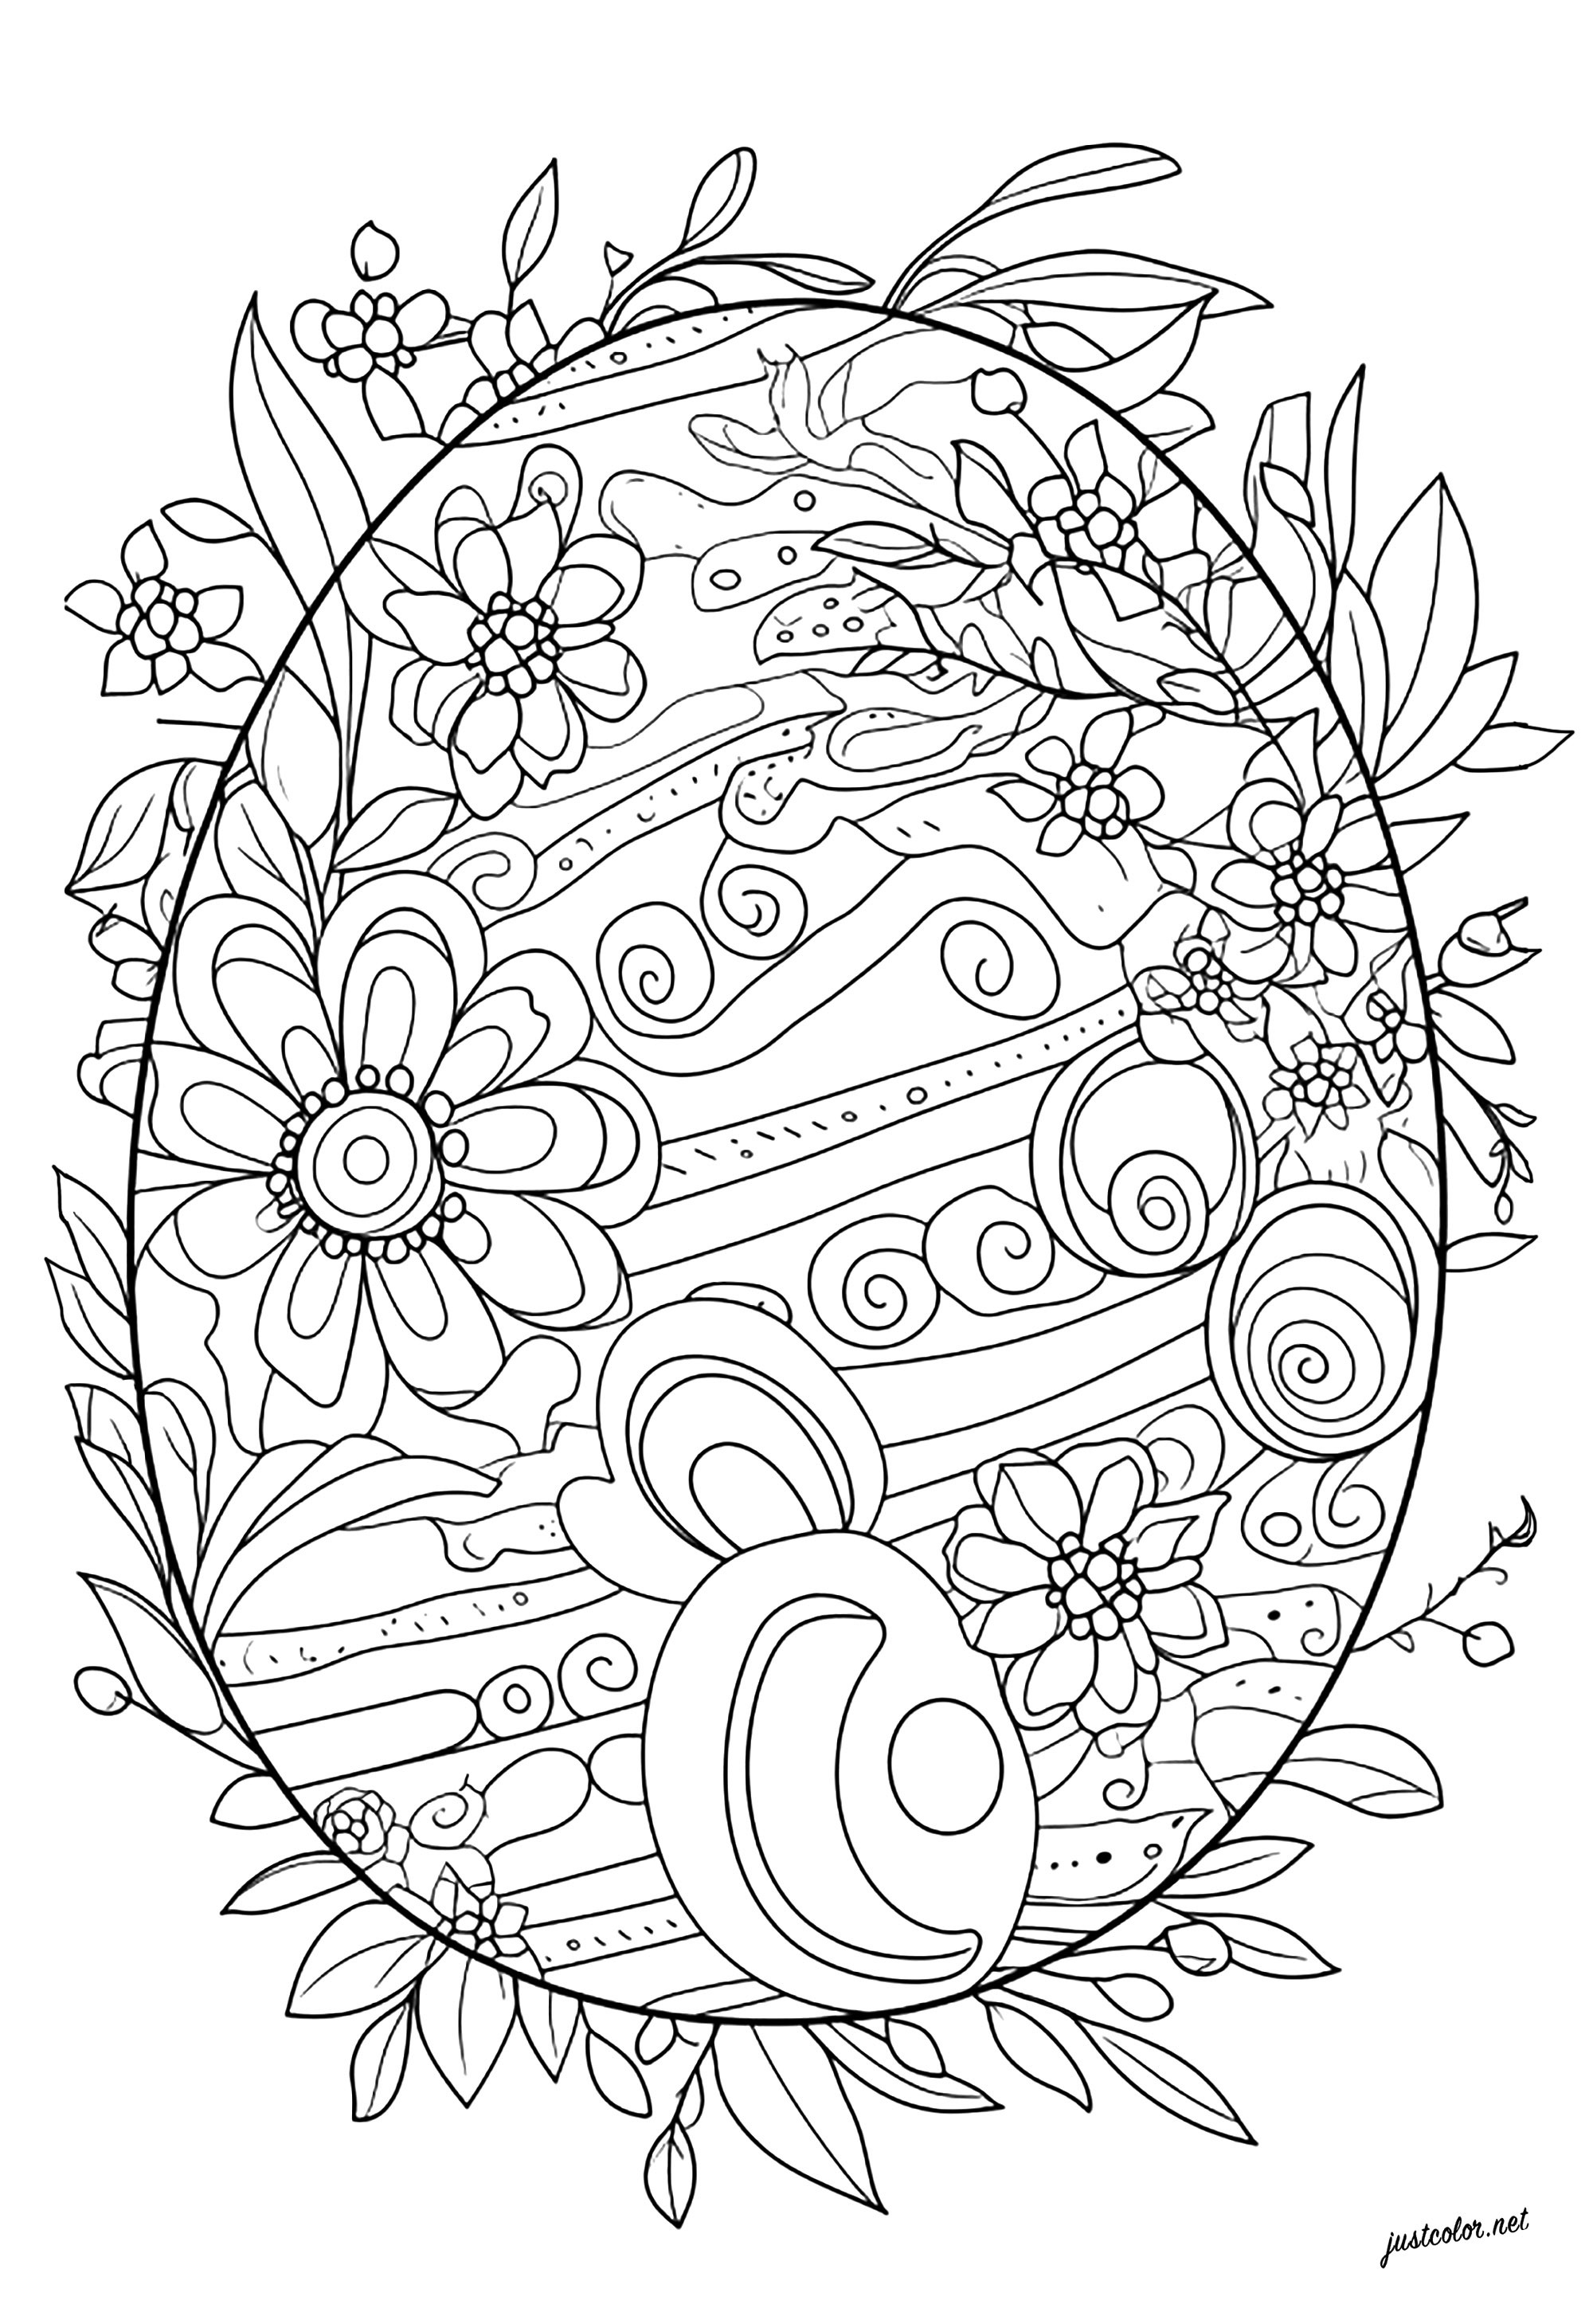 Coloração original de um ovo de Páscoa. Pinte os motivos florais e abstractos deste ovo de Páscoa